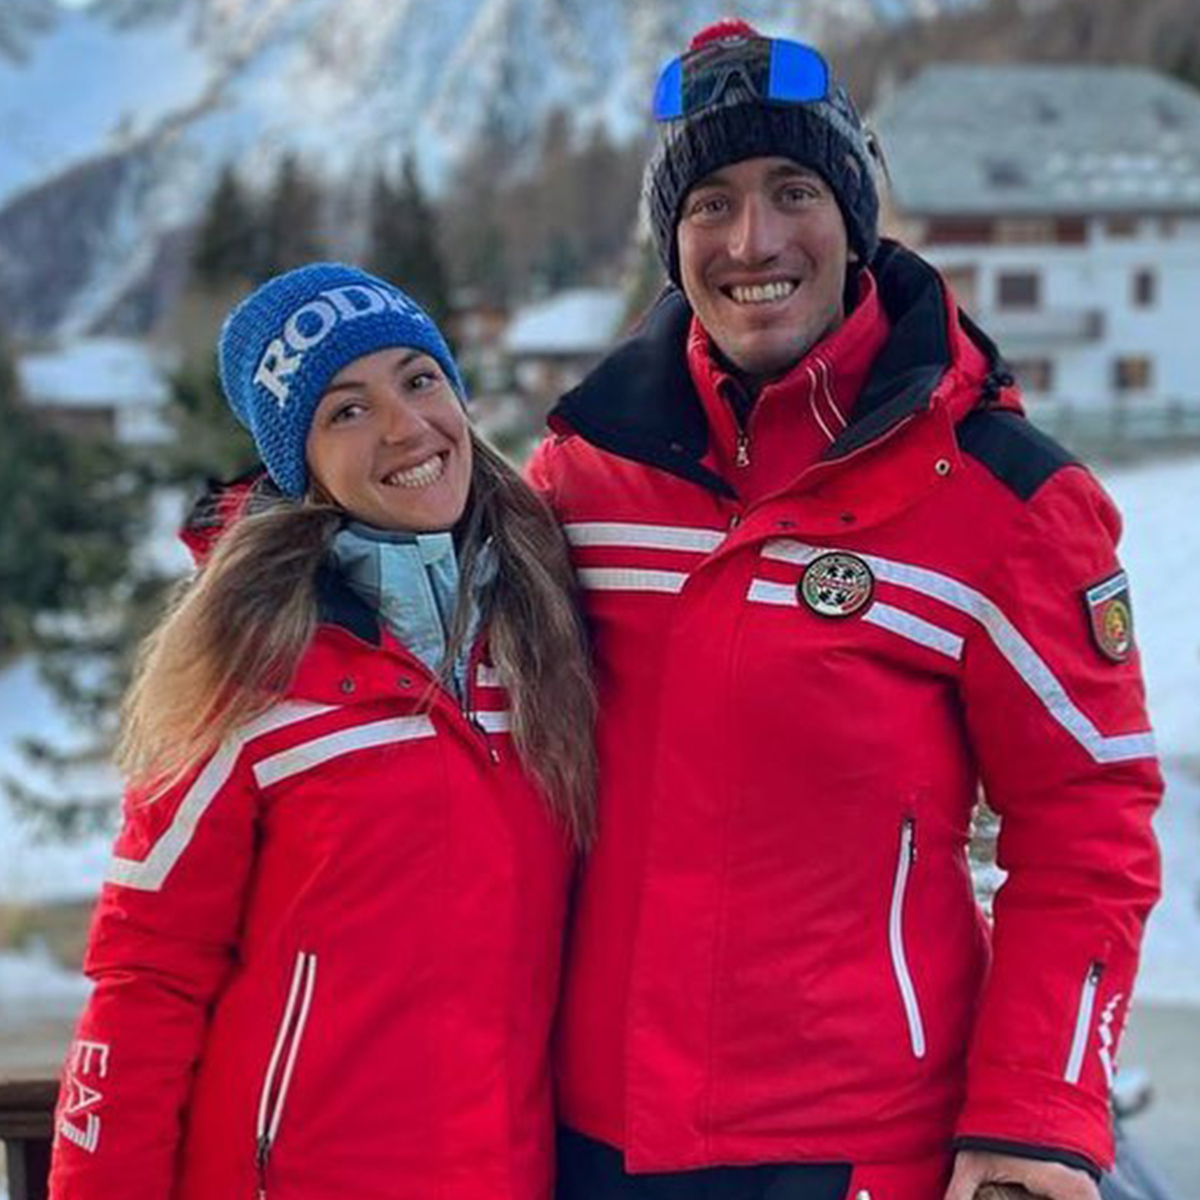 Скиорската общност претърпя сърцераздирателна загуба Професионалният скиор и приятелката му Елиза Арлиан починаха